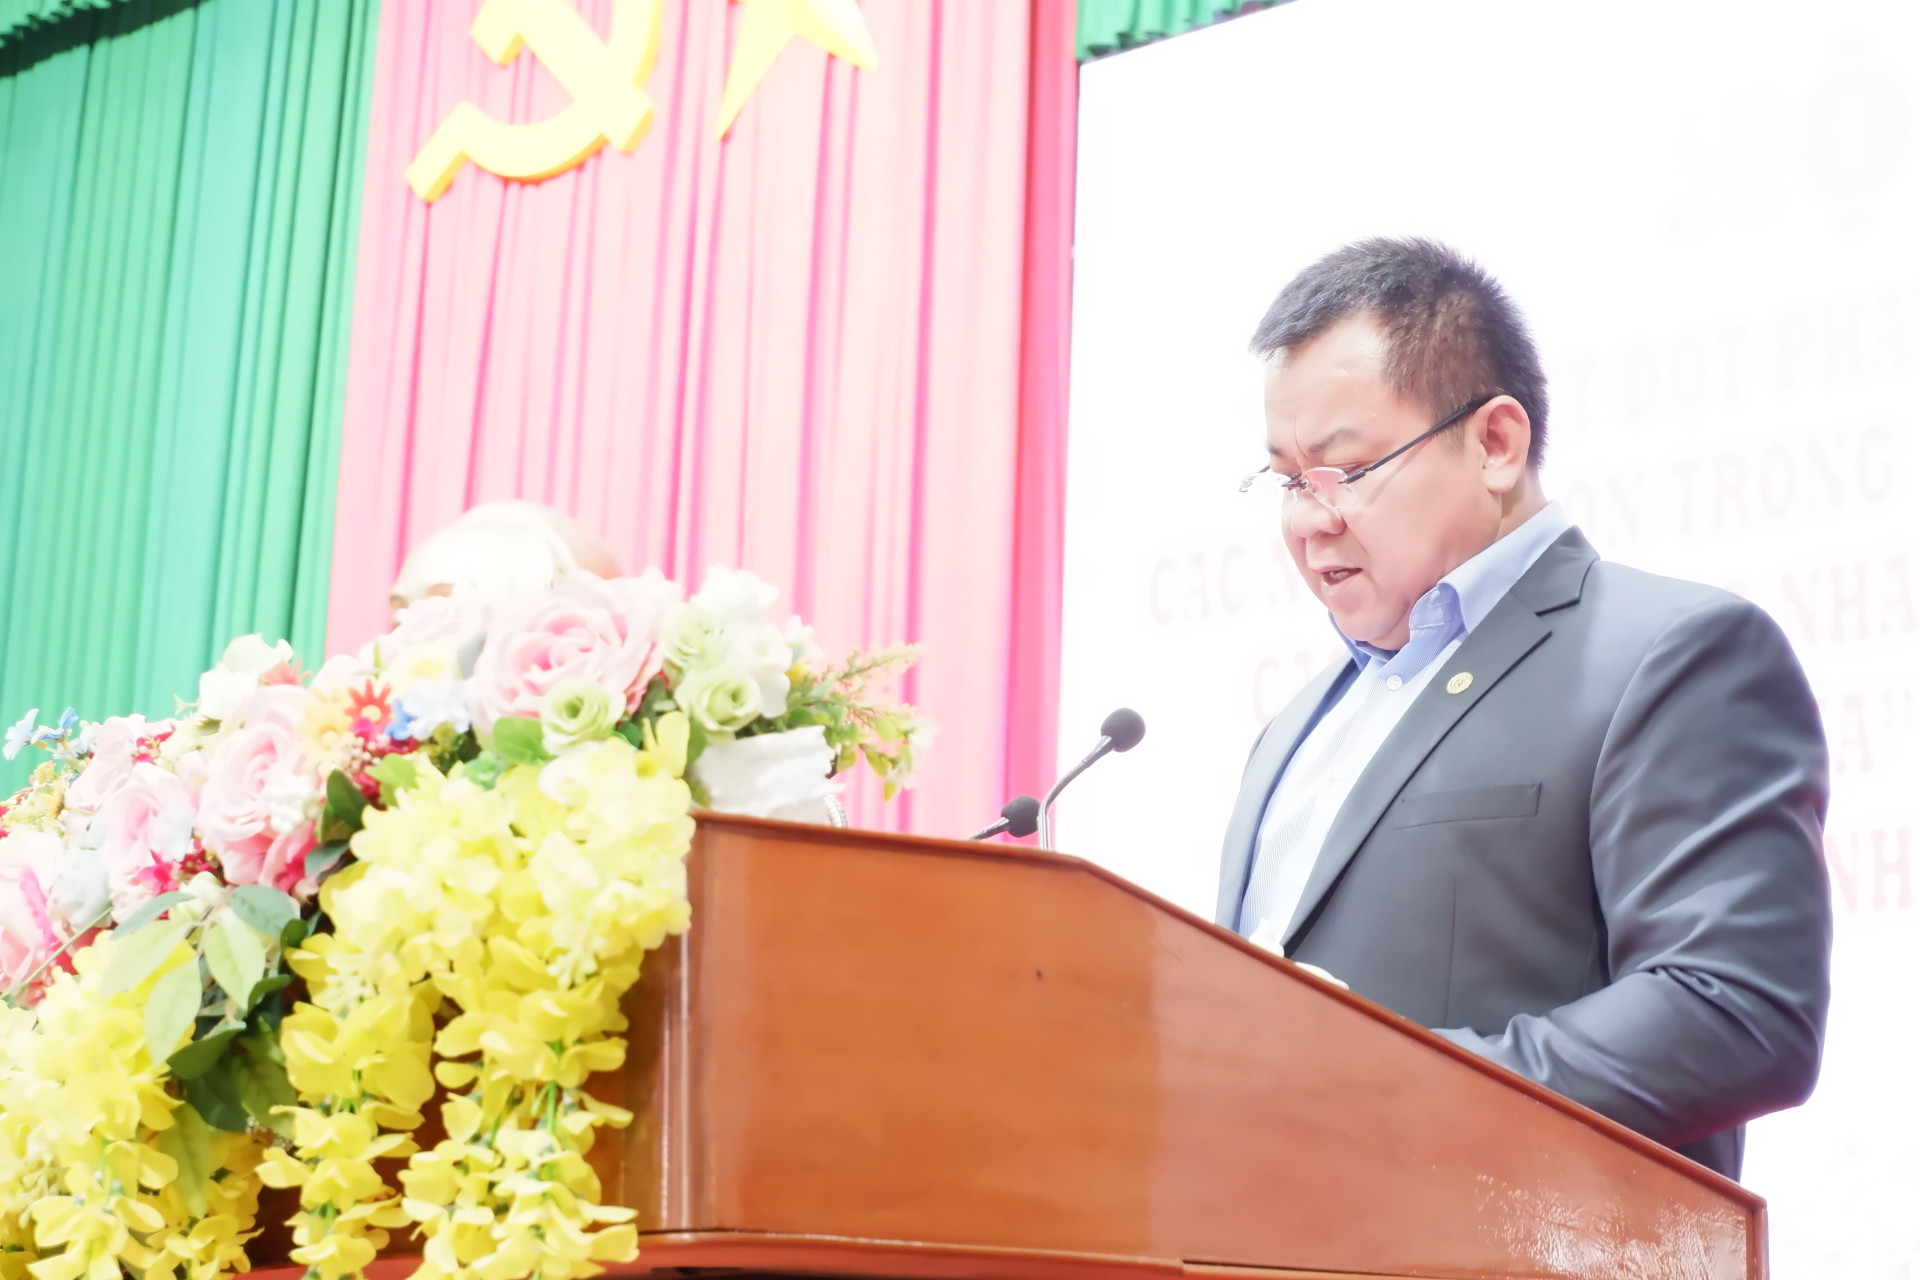 Ông Nguyễn Tâm Tiến, Tổng Giám đốc Trungnam Group chia sẻ tại buổi Hội nghị Tổng kết các chương trình an sinh xã hội của tỉnh Vĩnh Long.